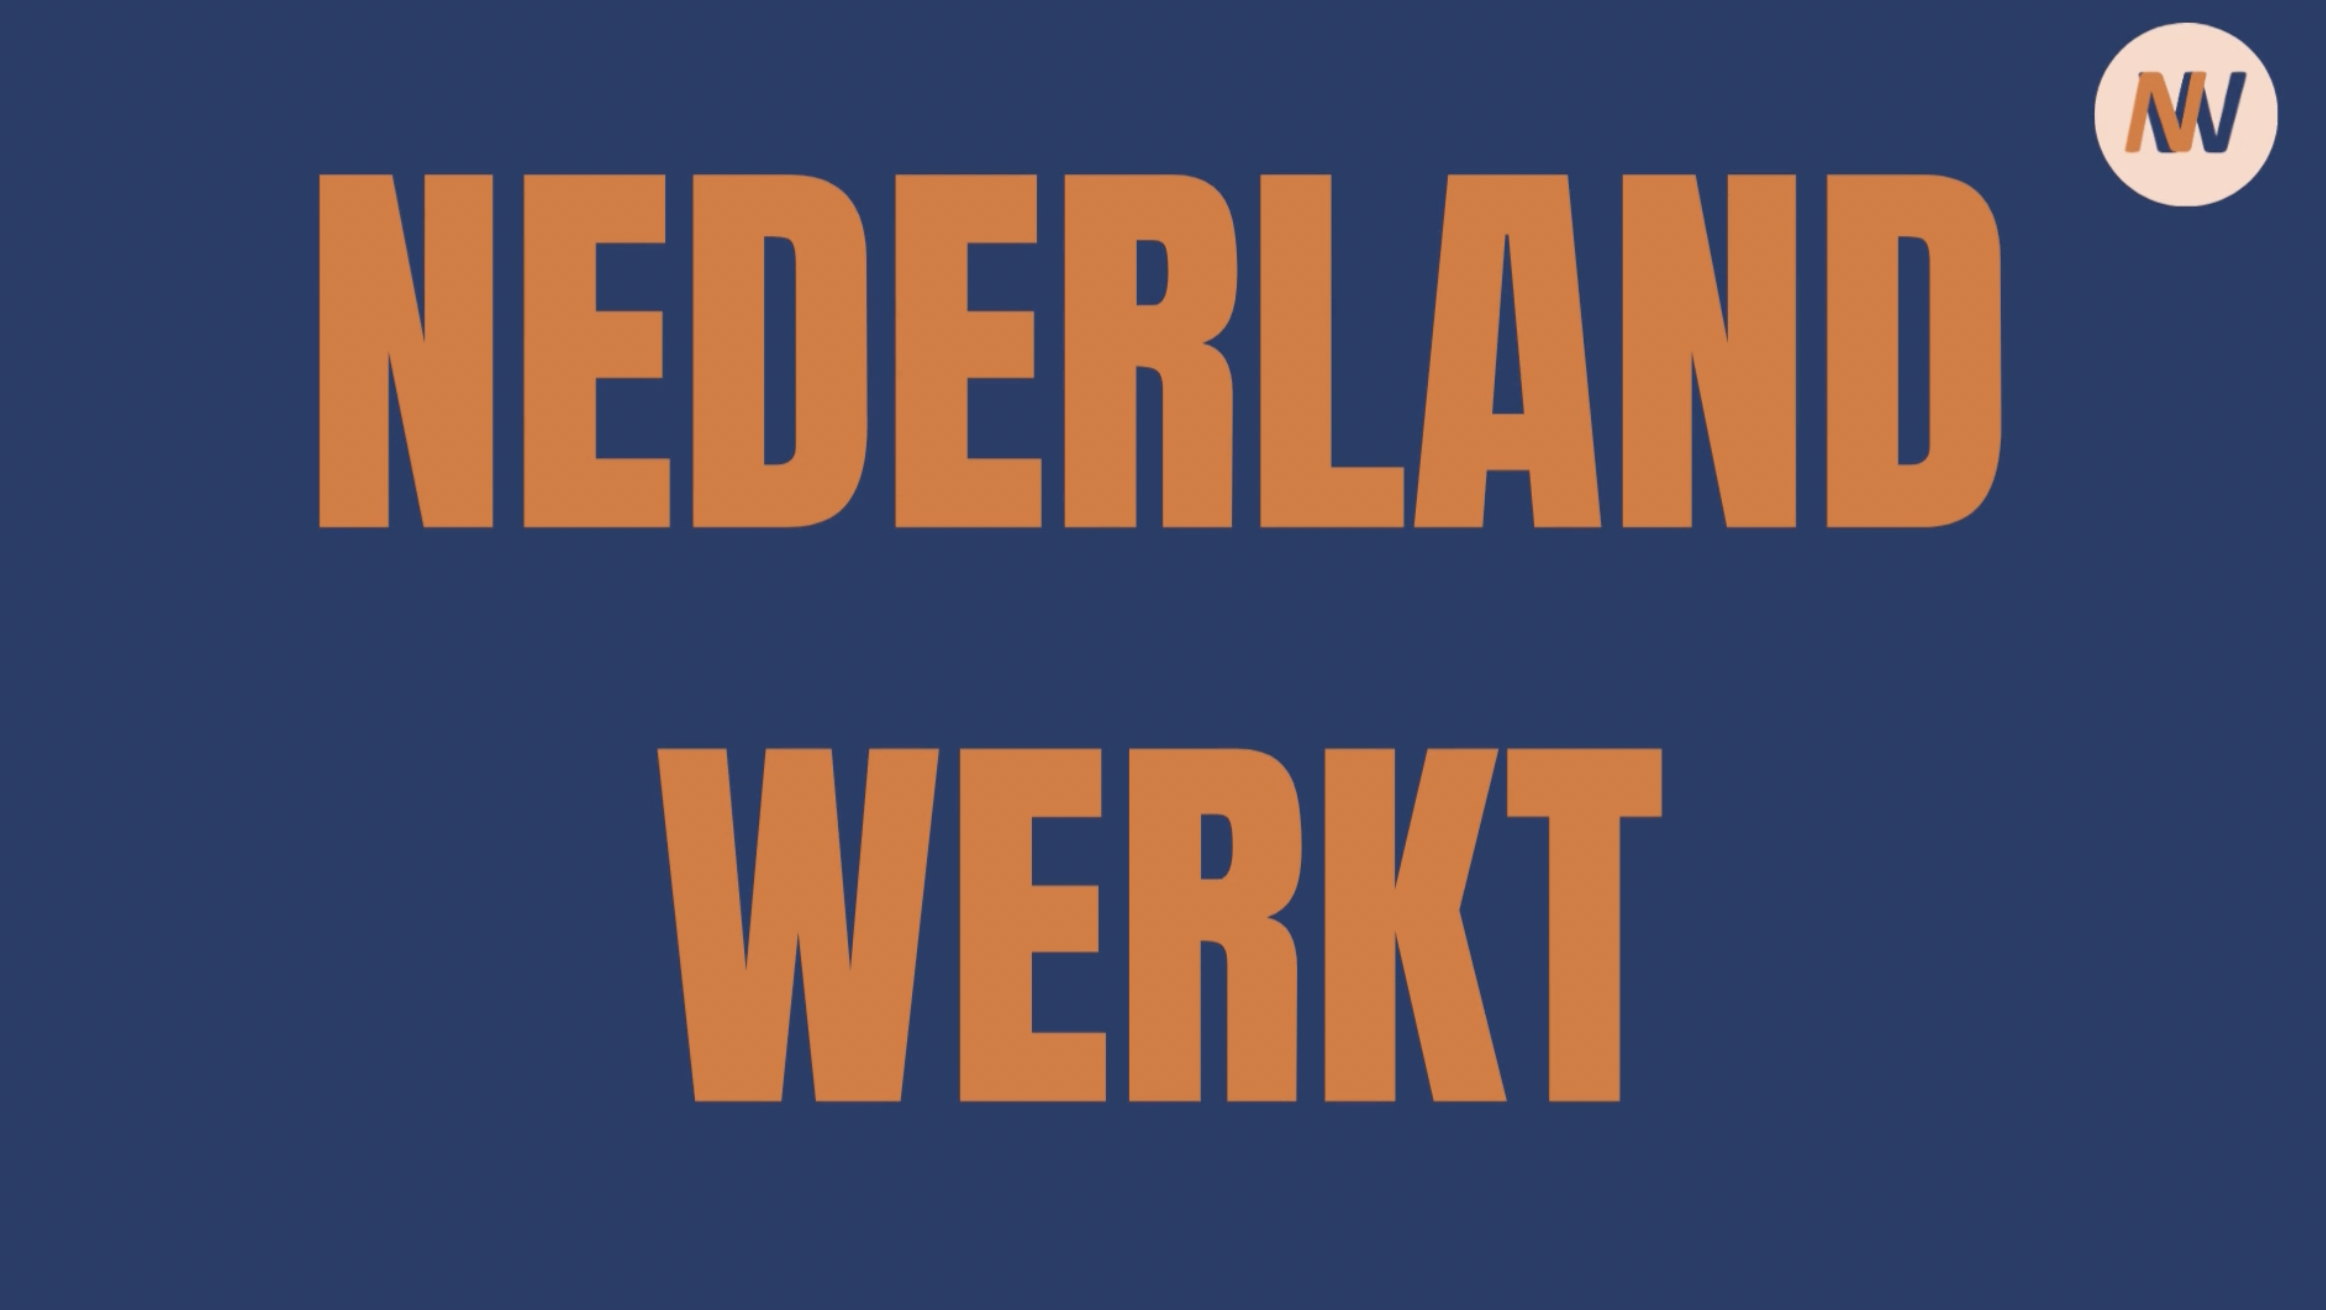 binnenvallen Typisch protest Home - Nederland werkt